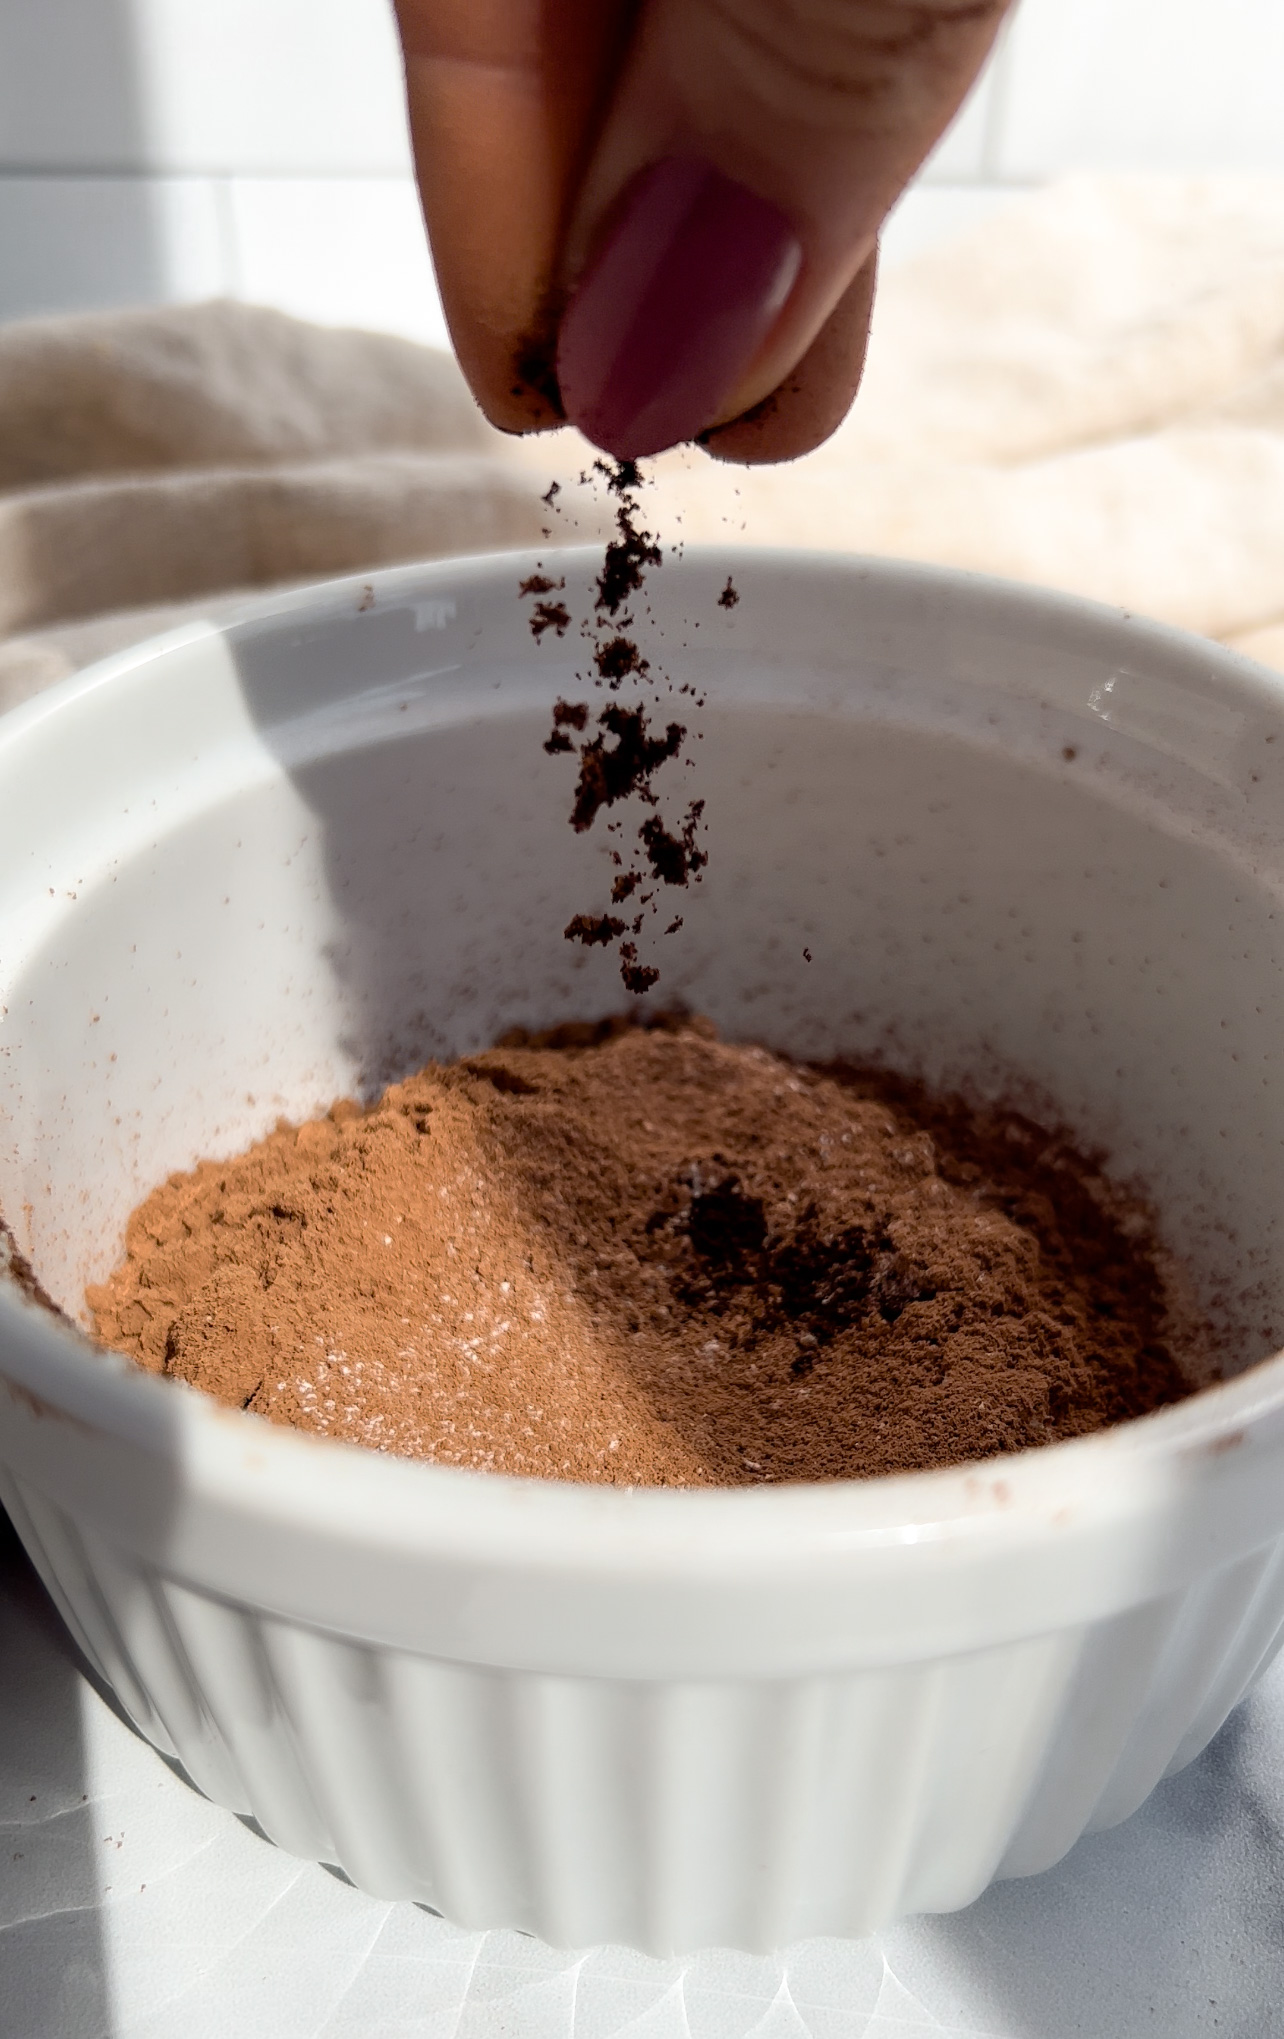 espresso powder being added to a bowl